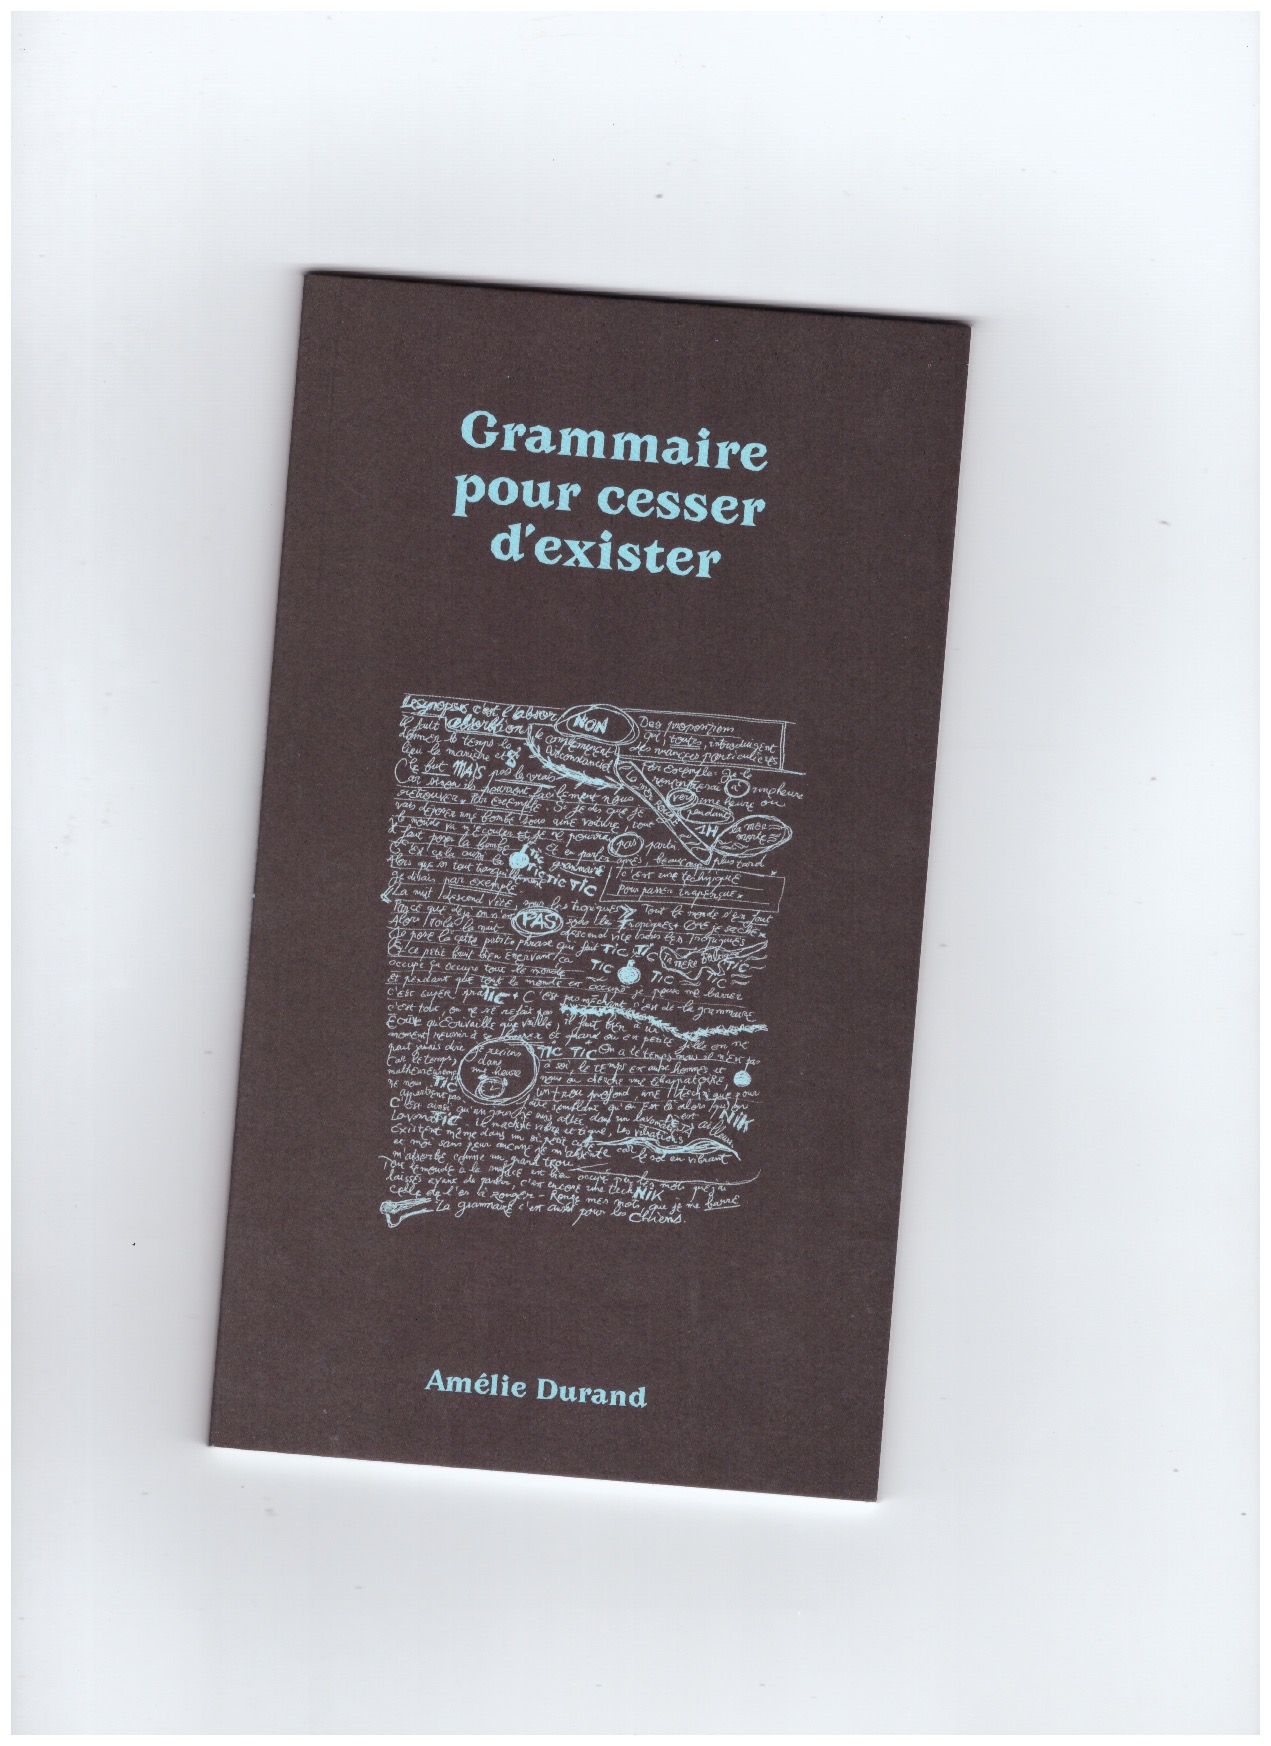 Grammaire pour cesser d'exister by Amélie Durand